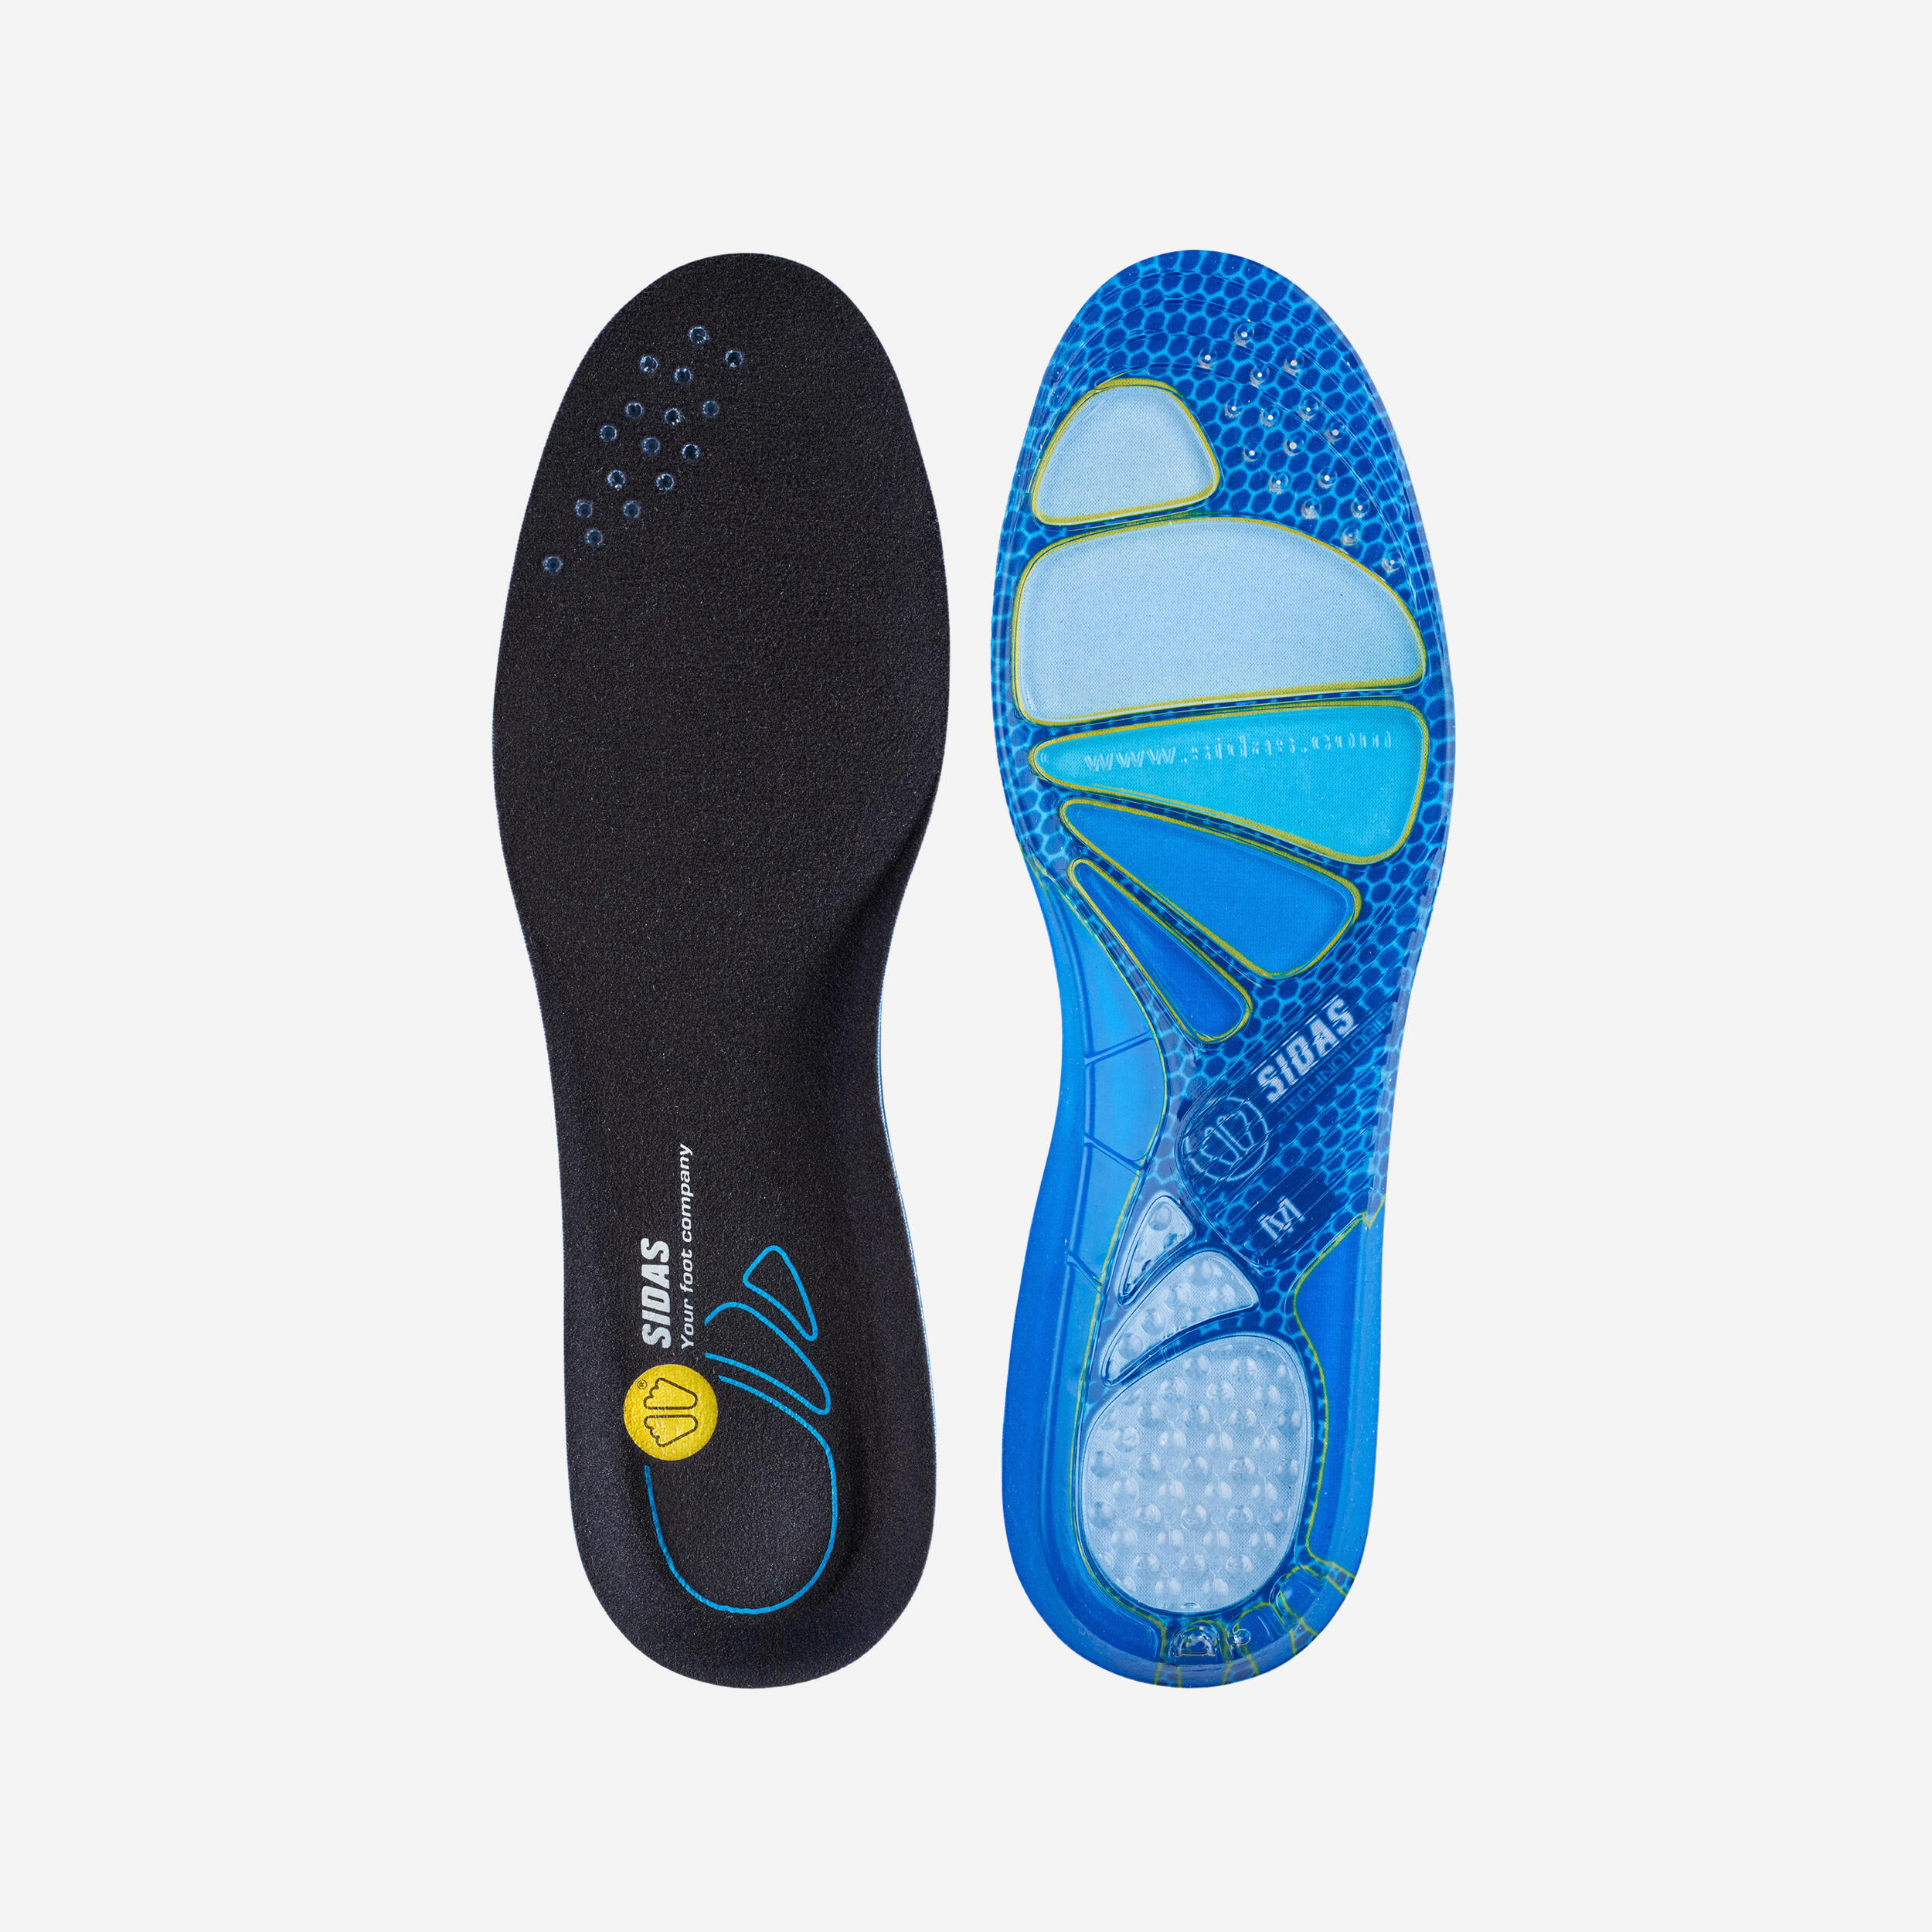 ERGOfoot Plantillas cómodas de gel Sport transpirables diseño antideslizante absorción de impactos ideales para zapatos de deporte y de trabajo. 